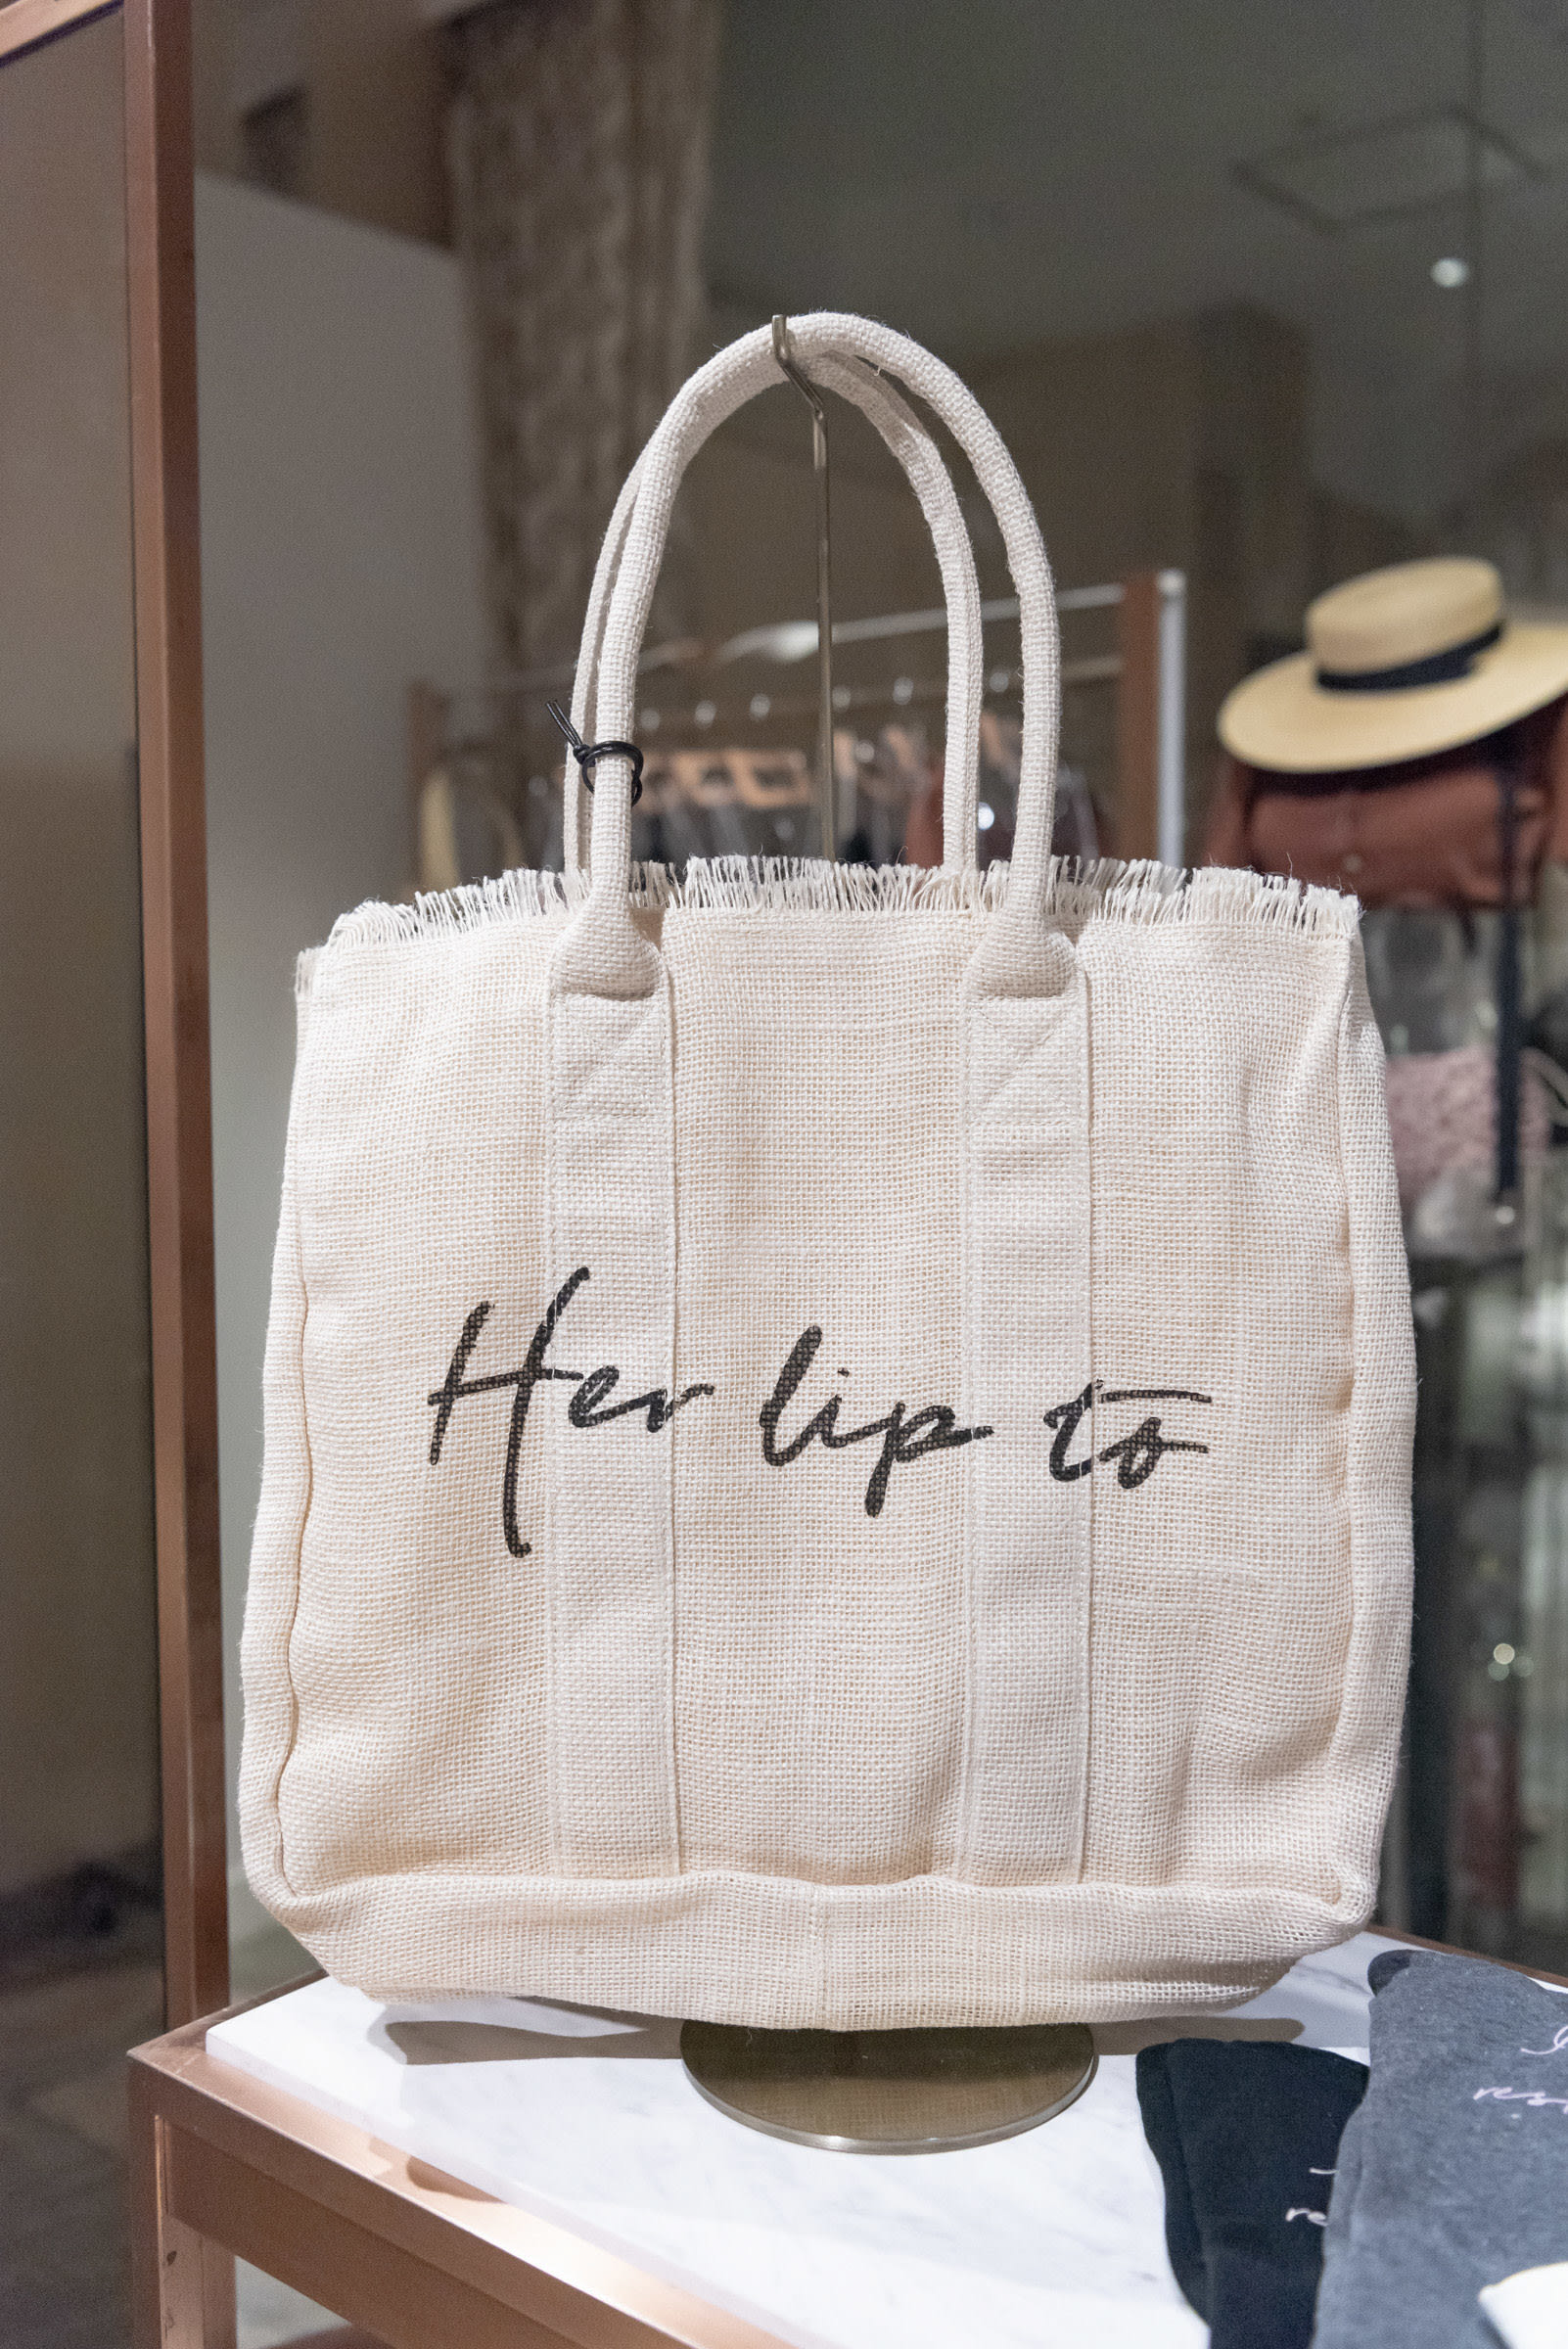 小嶋陽菜によるブランド「Her lip to」限定店が伊勢丹新宿店に、リップ 